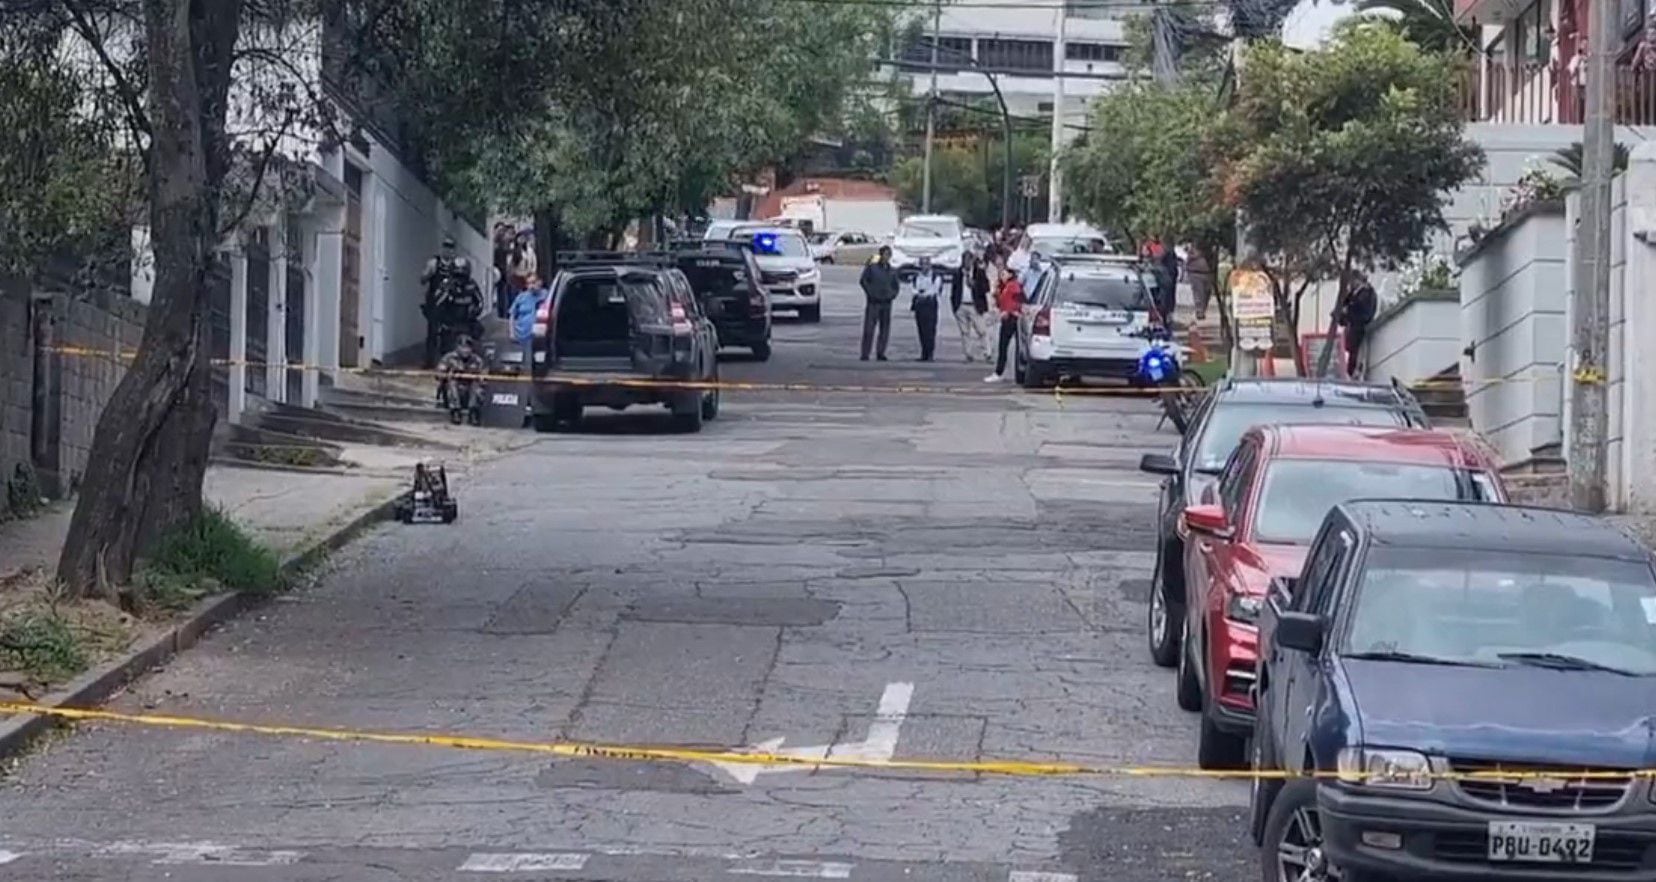 Equipo antiexplosivos revisa mochila abandonada cerca de la oficina del nuevo alcalde de Quito, Pabel Muñoz